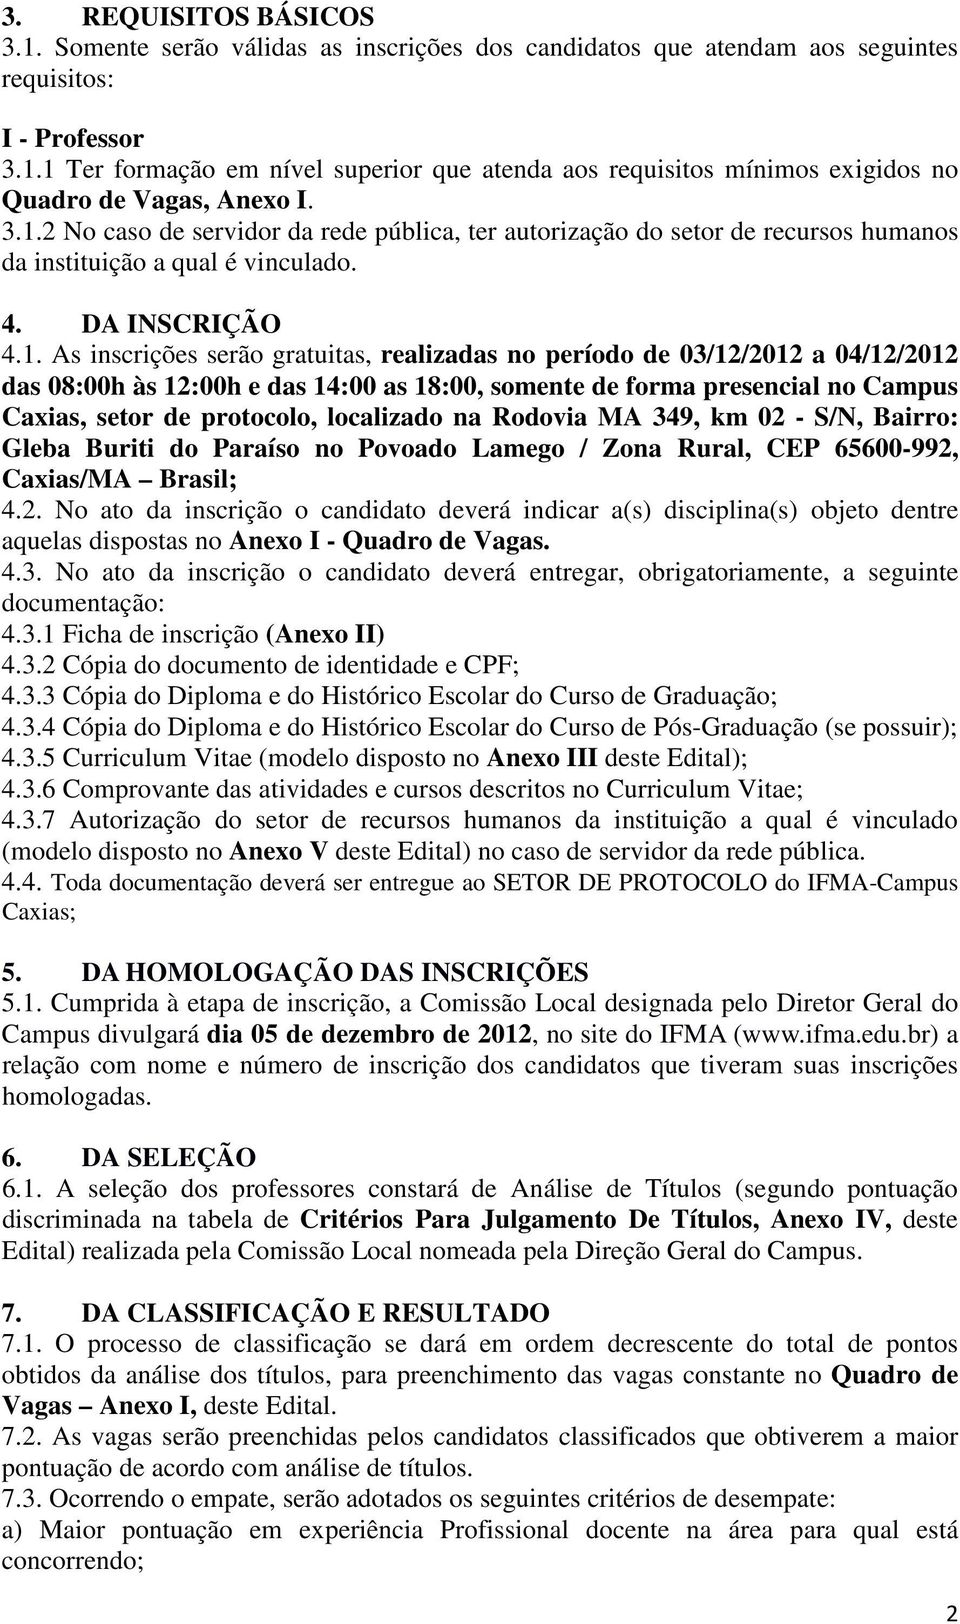 03/12/2012 a 04/12/2012 das 08:00h às 12:00h e das 14:00 as 18:00, somente de forma presencial no Campus Caxias, setor de protocolo, localizado na Rodovia MA 349, km 02 - S/N, Bairro: Gleba Buriti do